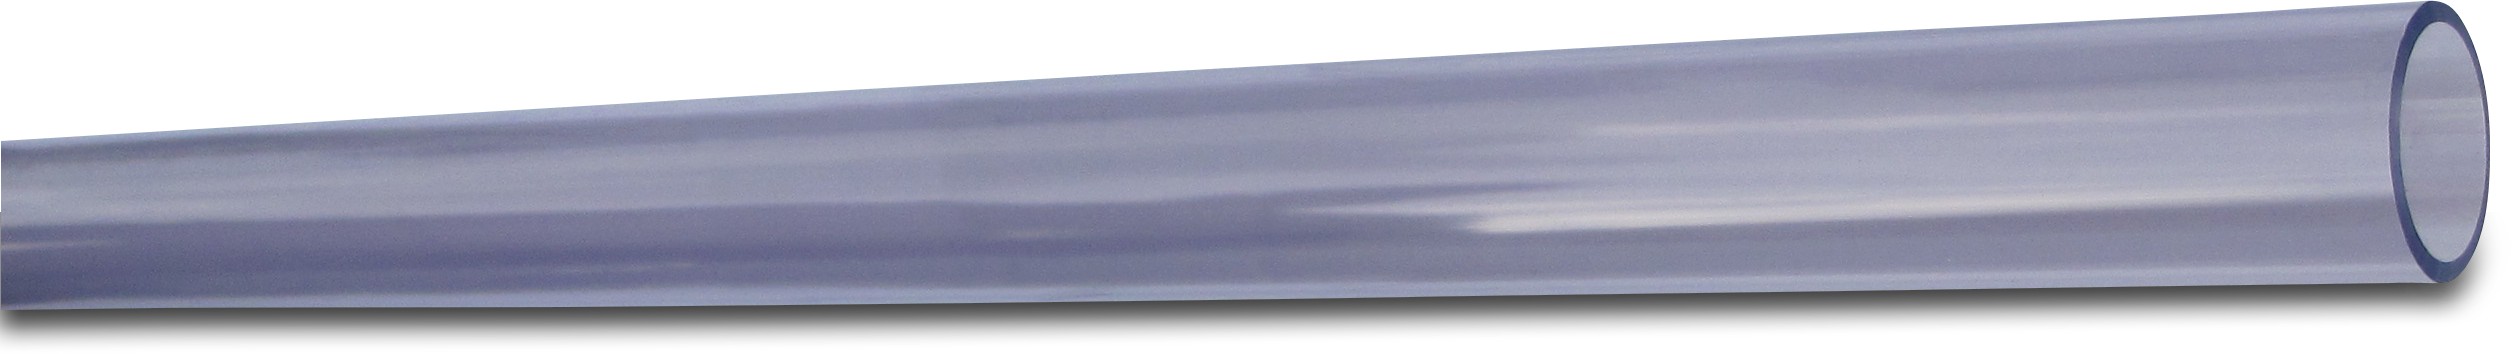 PVC-U  Rohr, Druckrohr nach ISO 5m